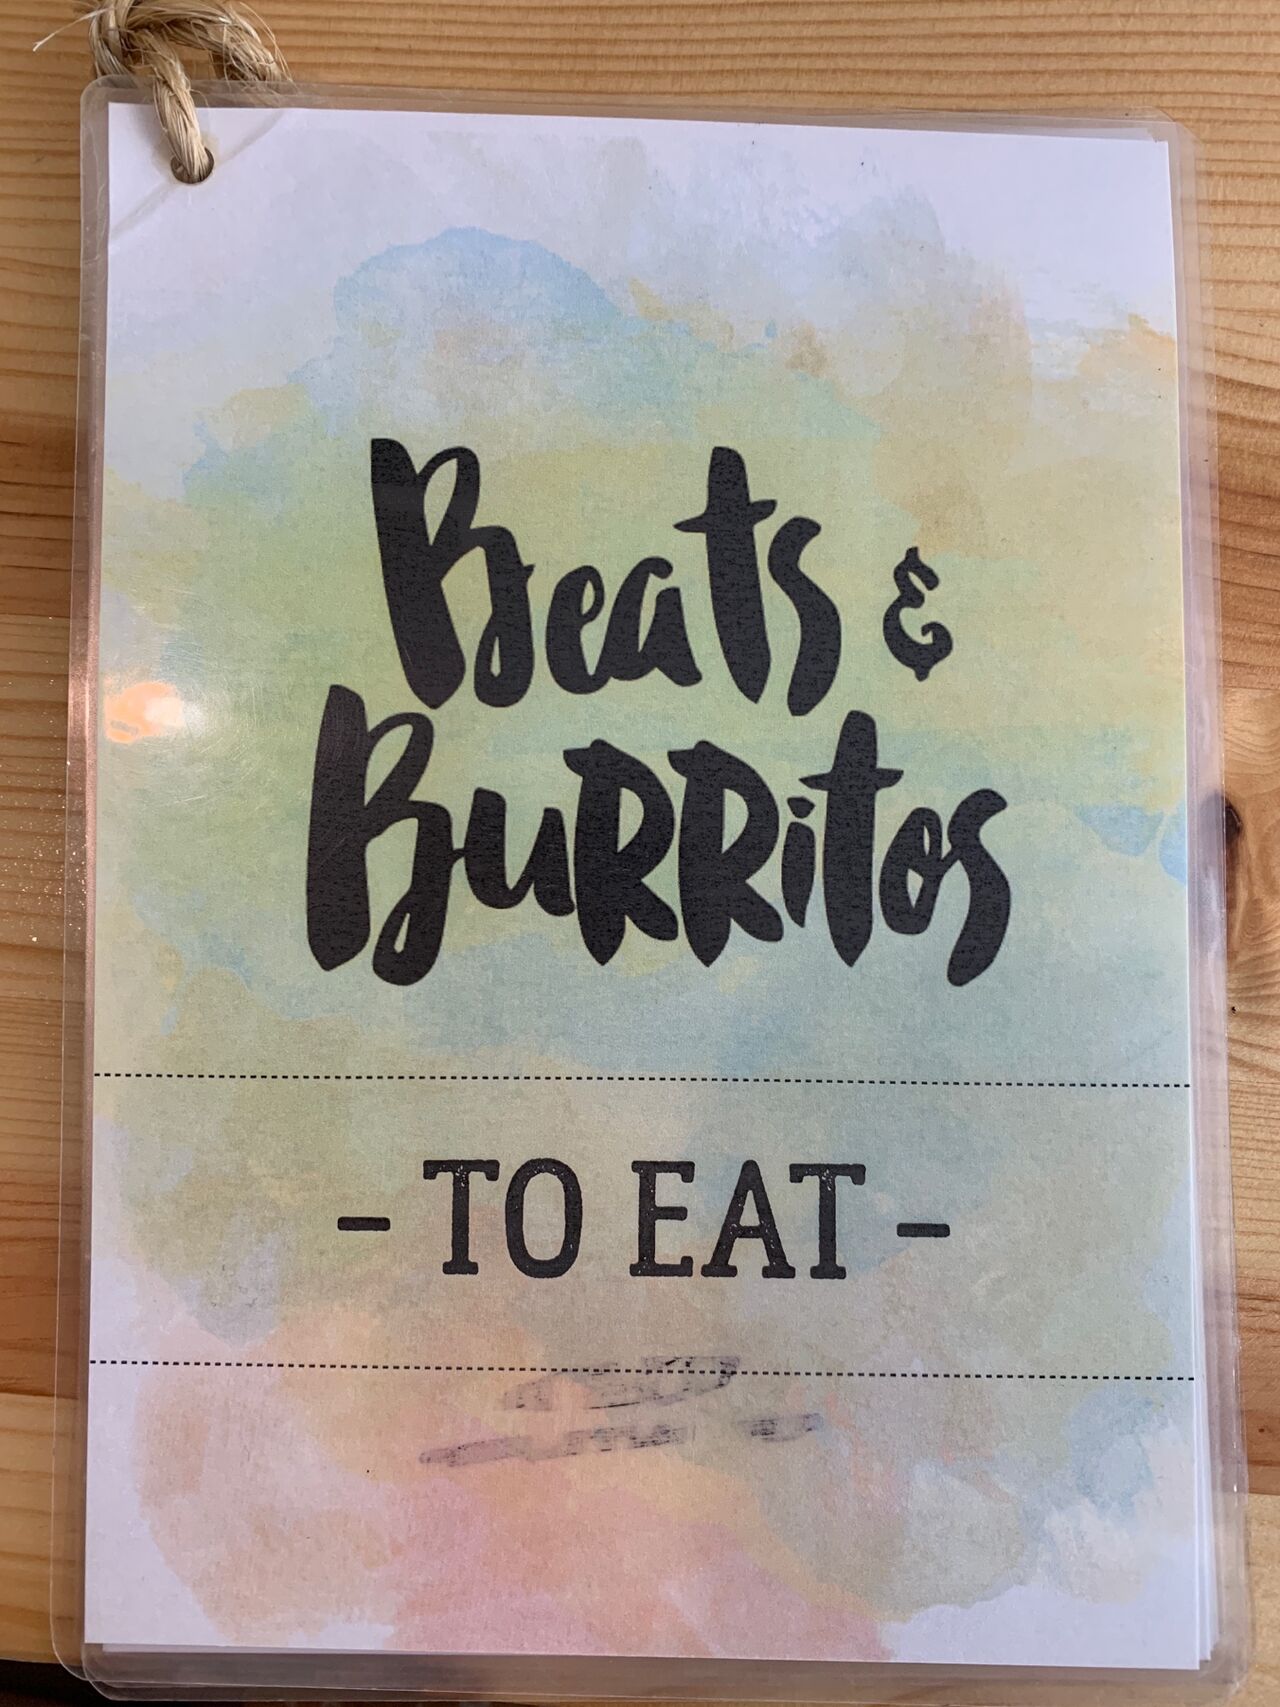 A photo of Beats & Burritos